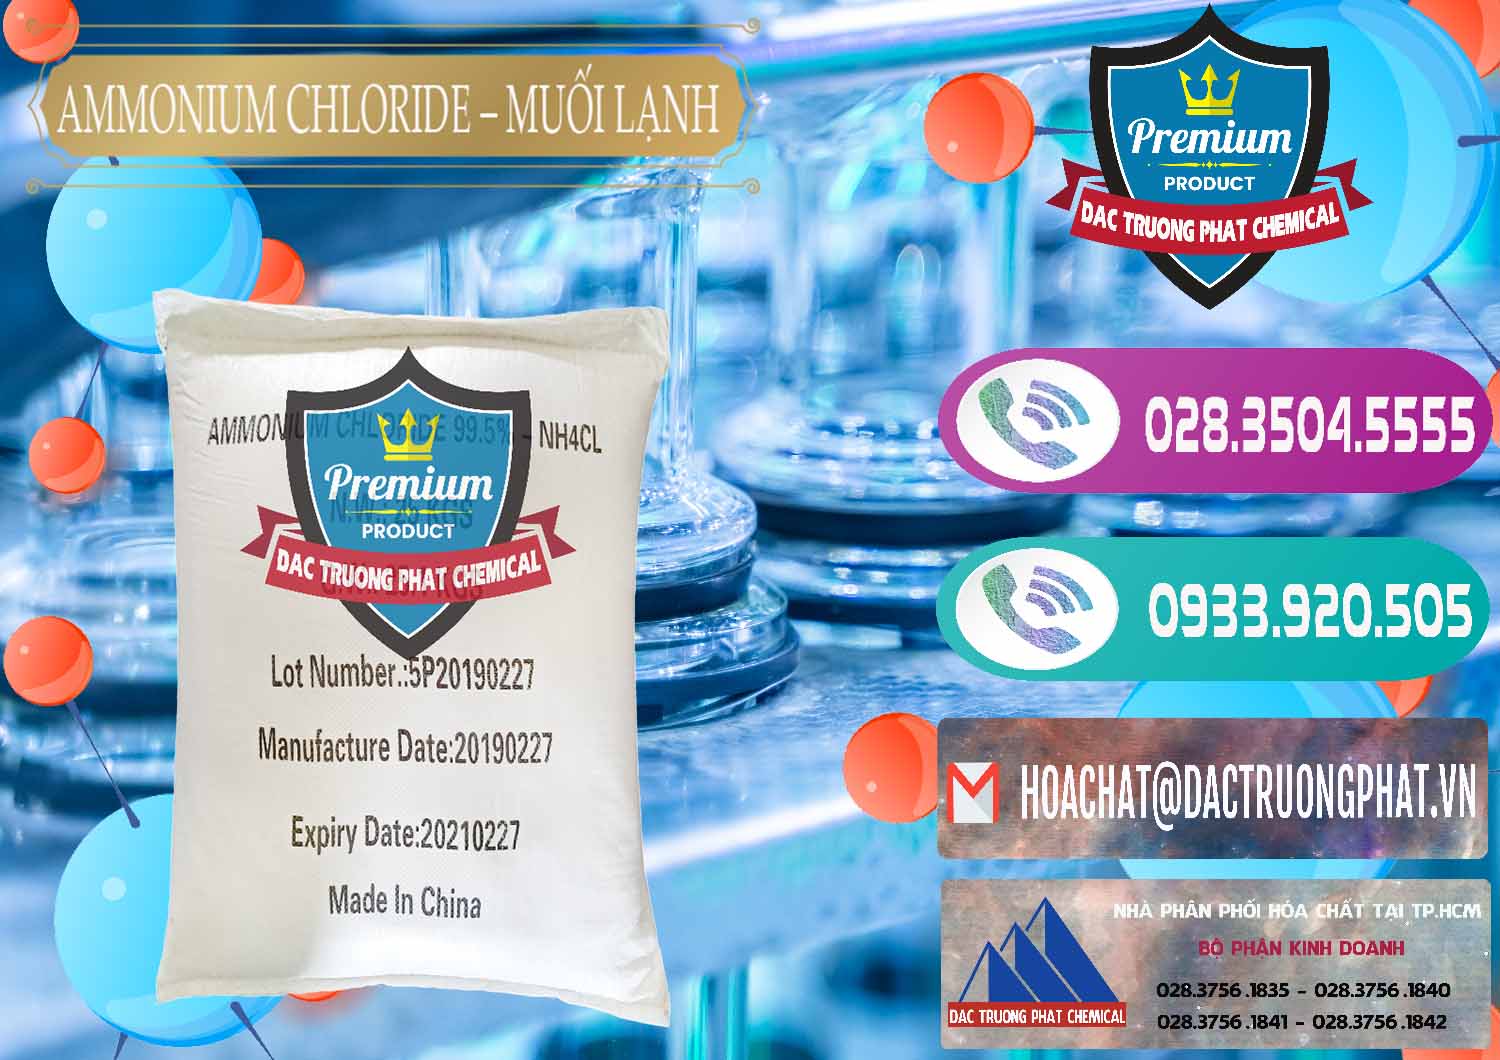 Công ty chuyên cung cấp và bán Ammonium Chloride - Muối Lạnh NH4CL Trung Quốc China - 0021 - Đơn vị chuyên cung cấp - kinh doanh hóa chất tại TP.HCM - hoachatxulynuoc.com